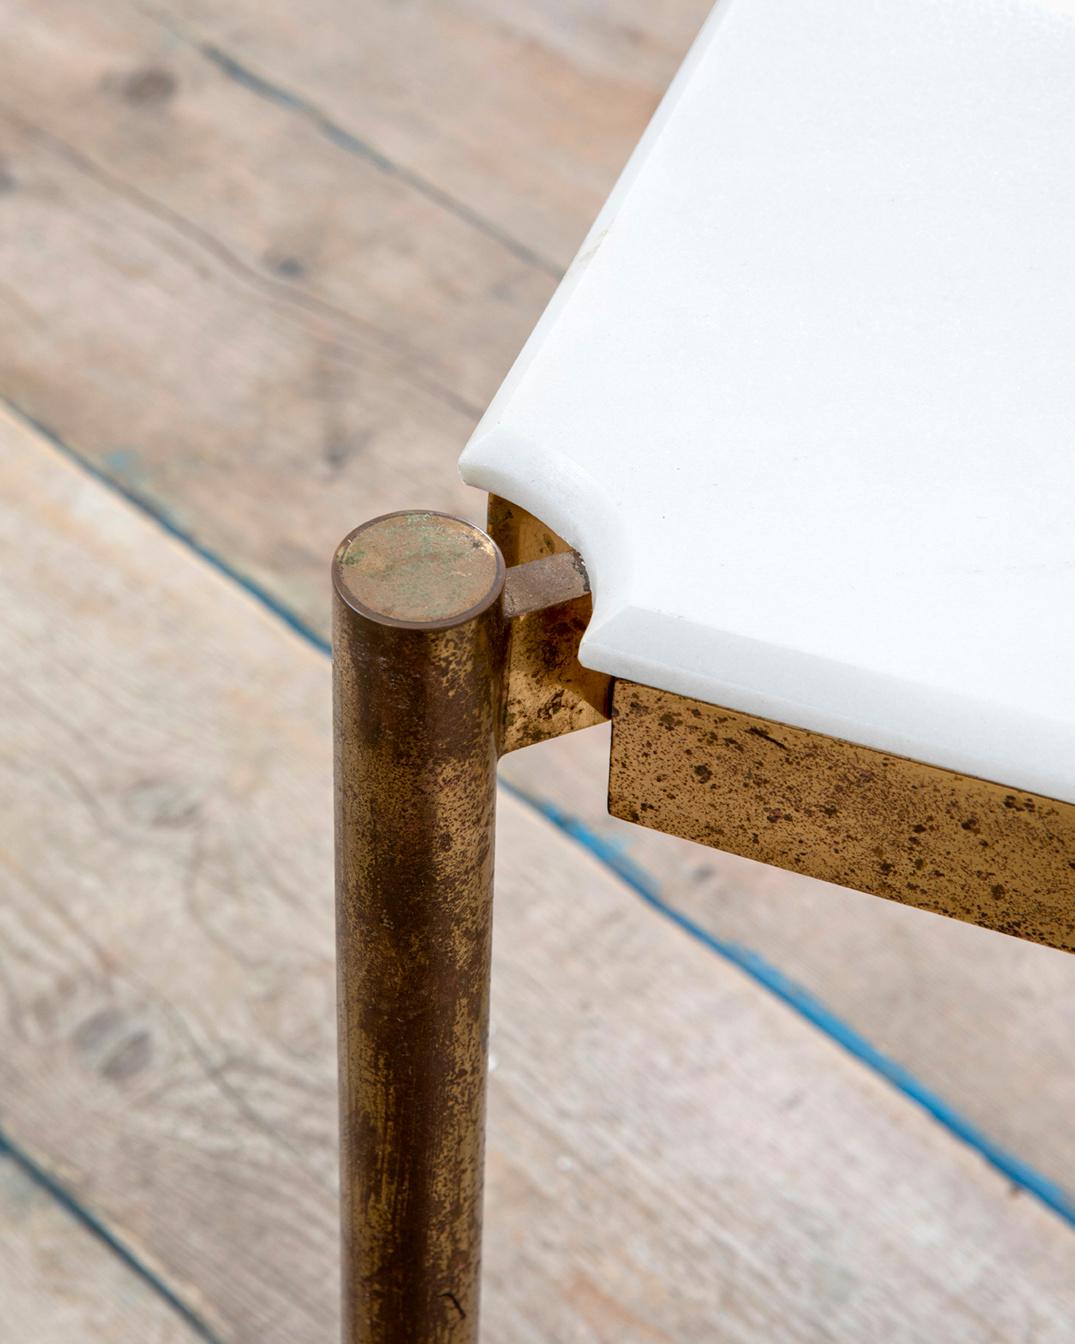 Niedriger Tisch, entworfen von Osvaldo Borsani für Tecno in den 50er Jahren.
Der Tisch hat eine Struktur aus Metall und eine Platte aus Marmor. 
Guter Zustand, Patina der Zeit in der Metallstruktur und in der Marmorplatte, komplett original.
Der